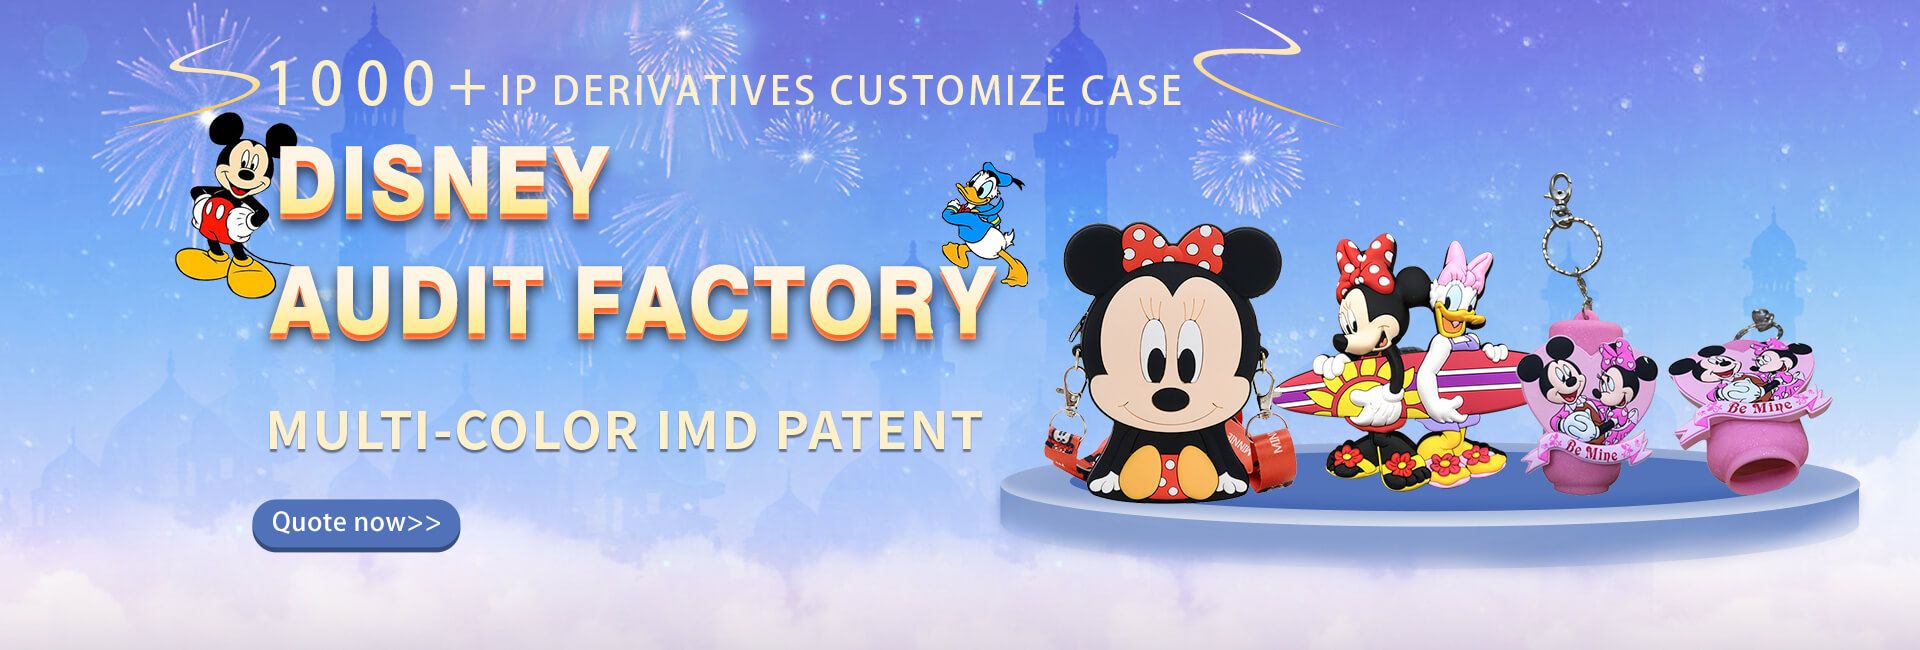 Disney audit factory